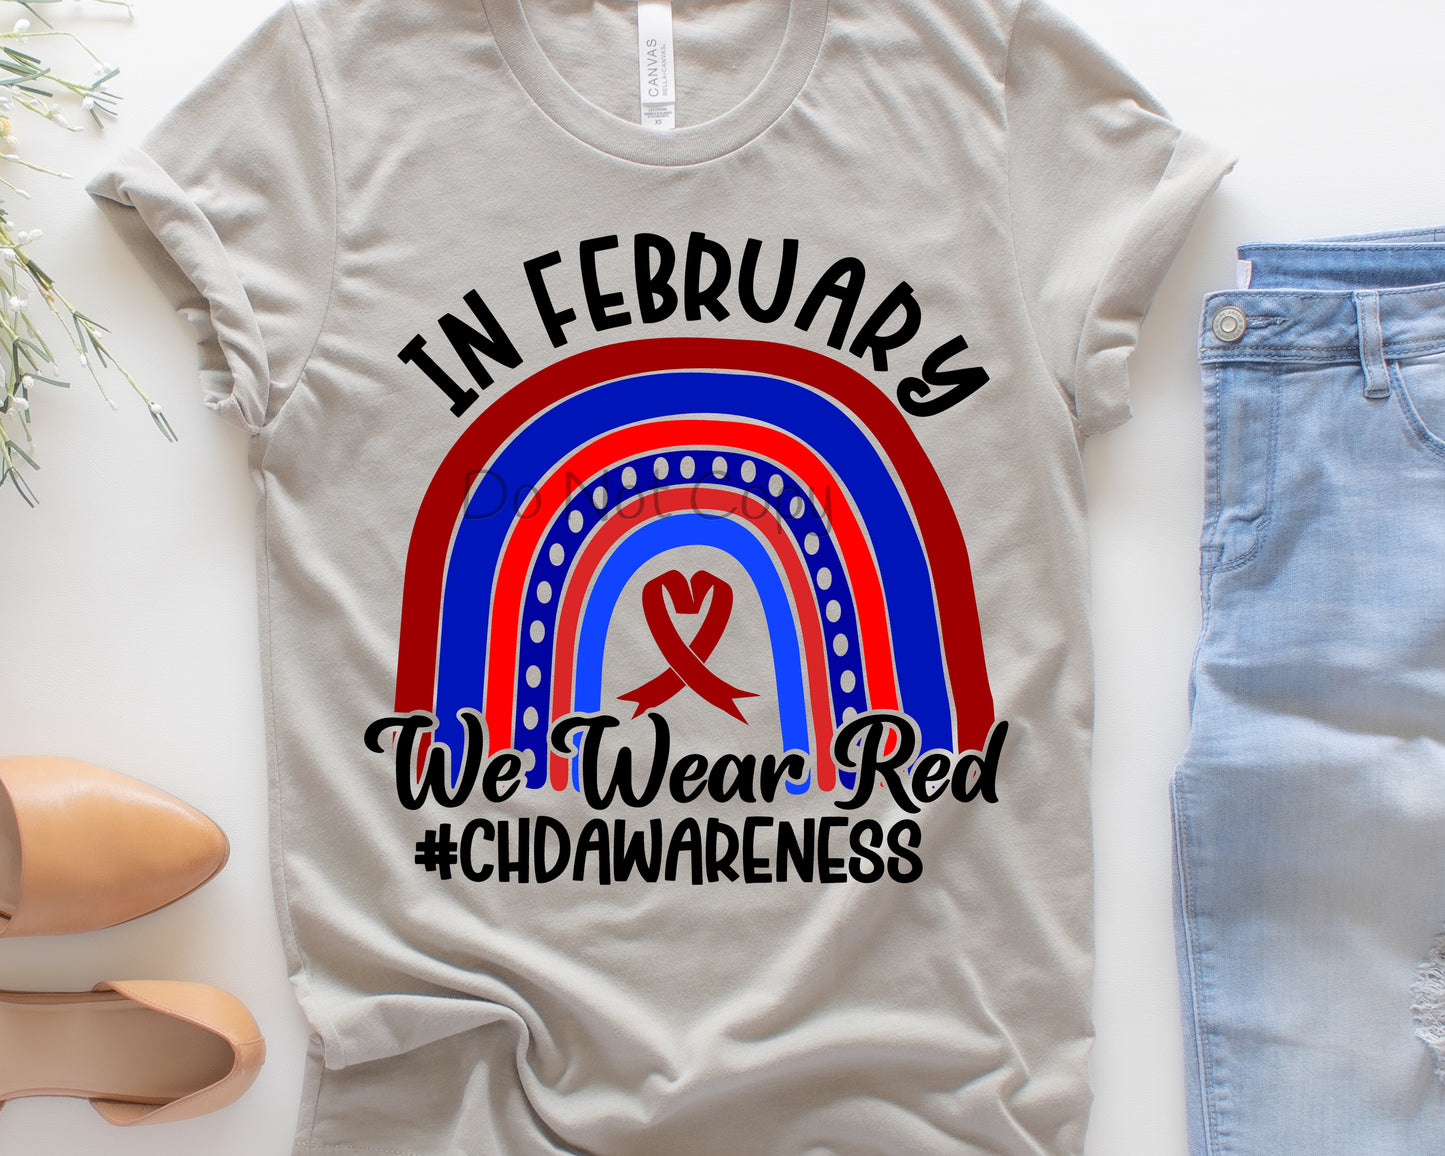 In February we wear red CHD awareness 8”-Screen Print